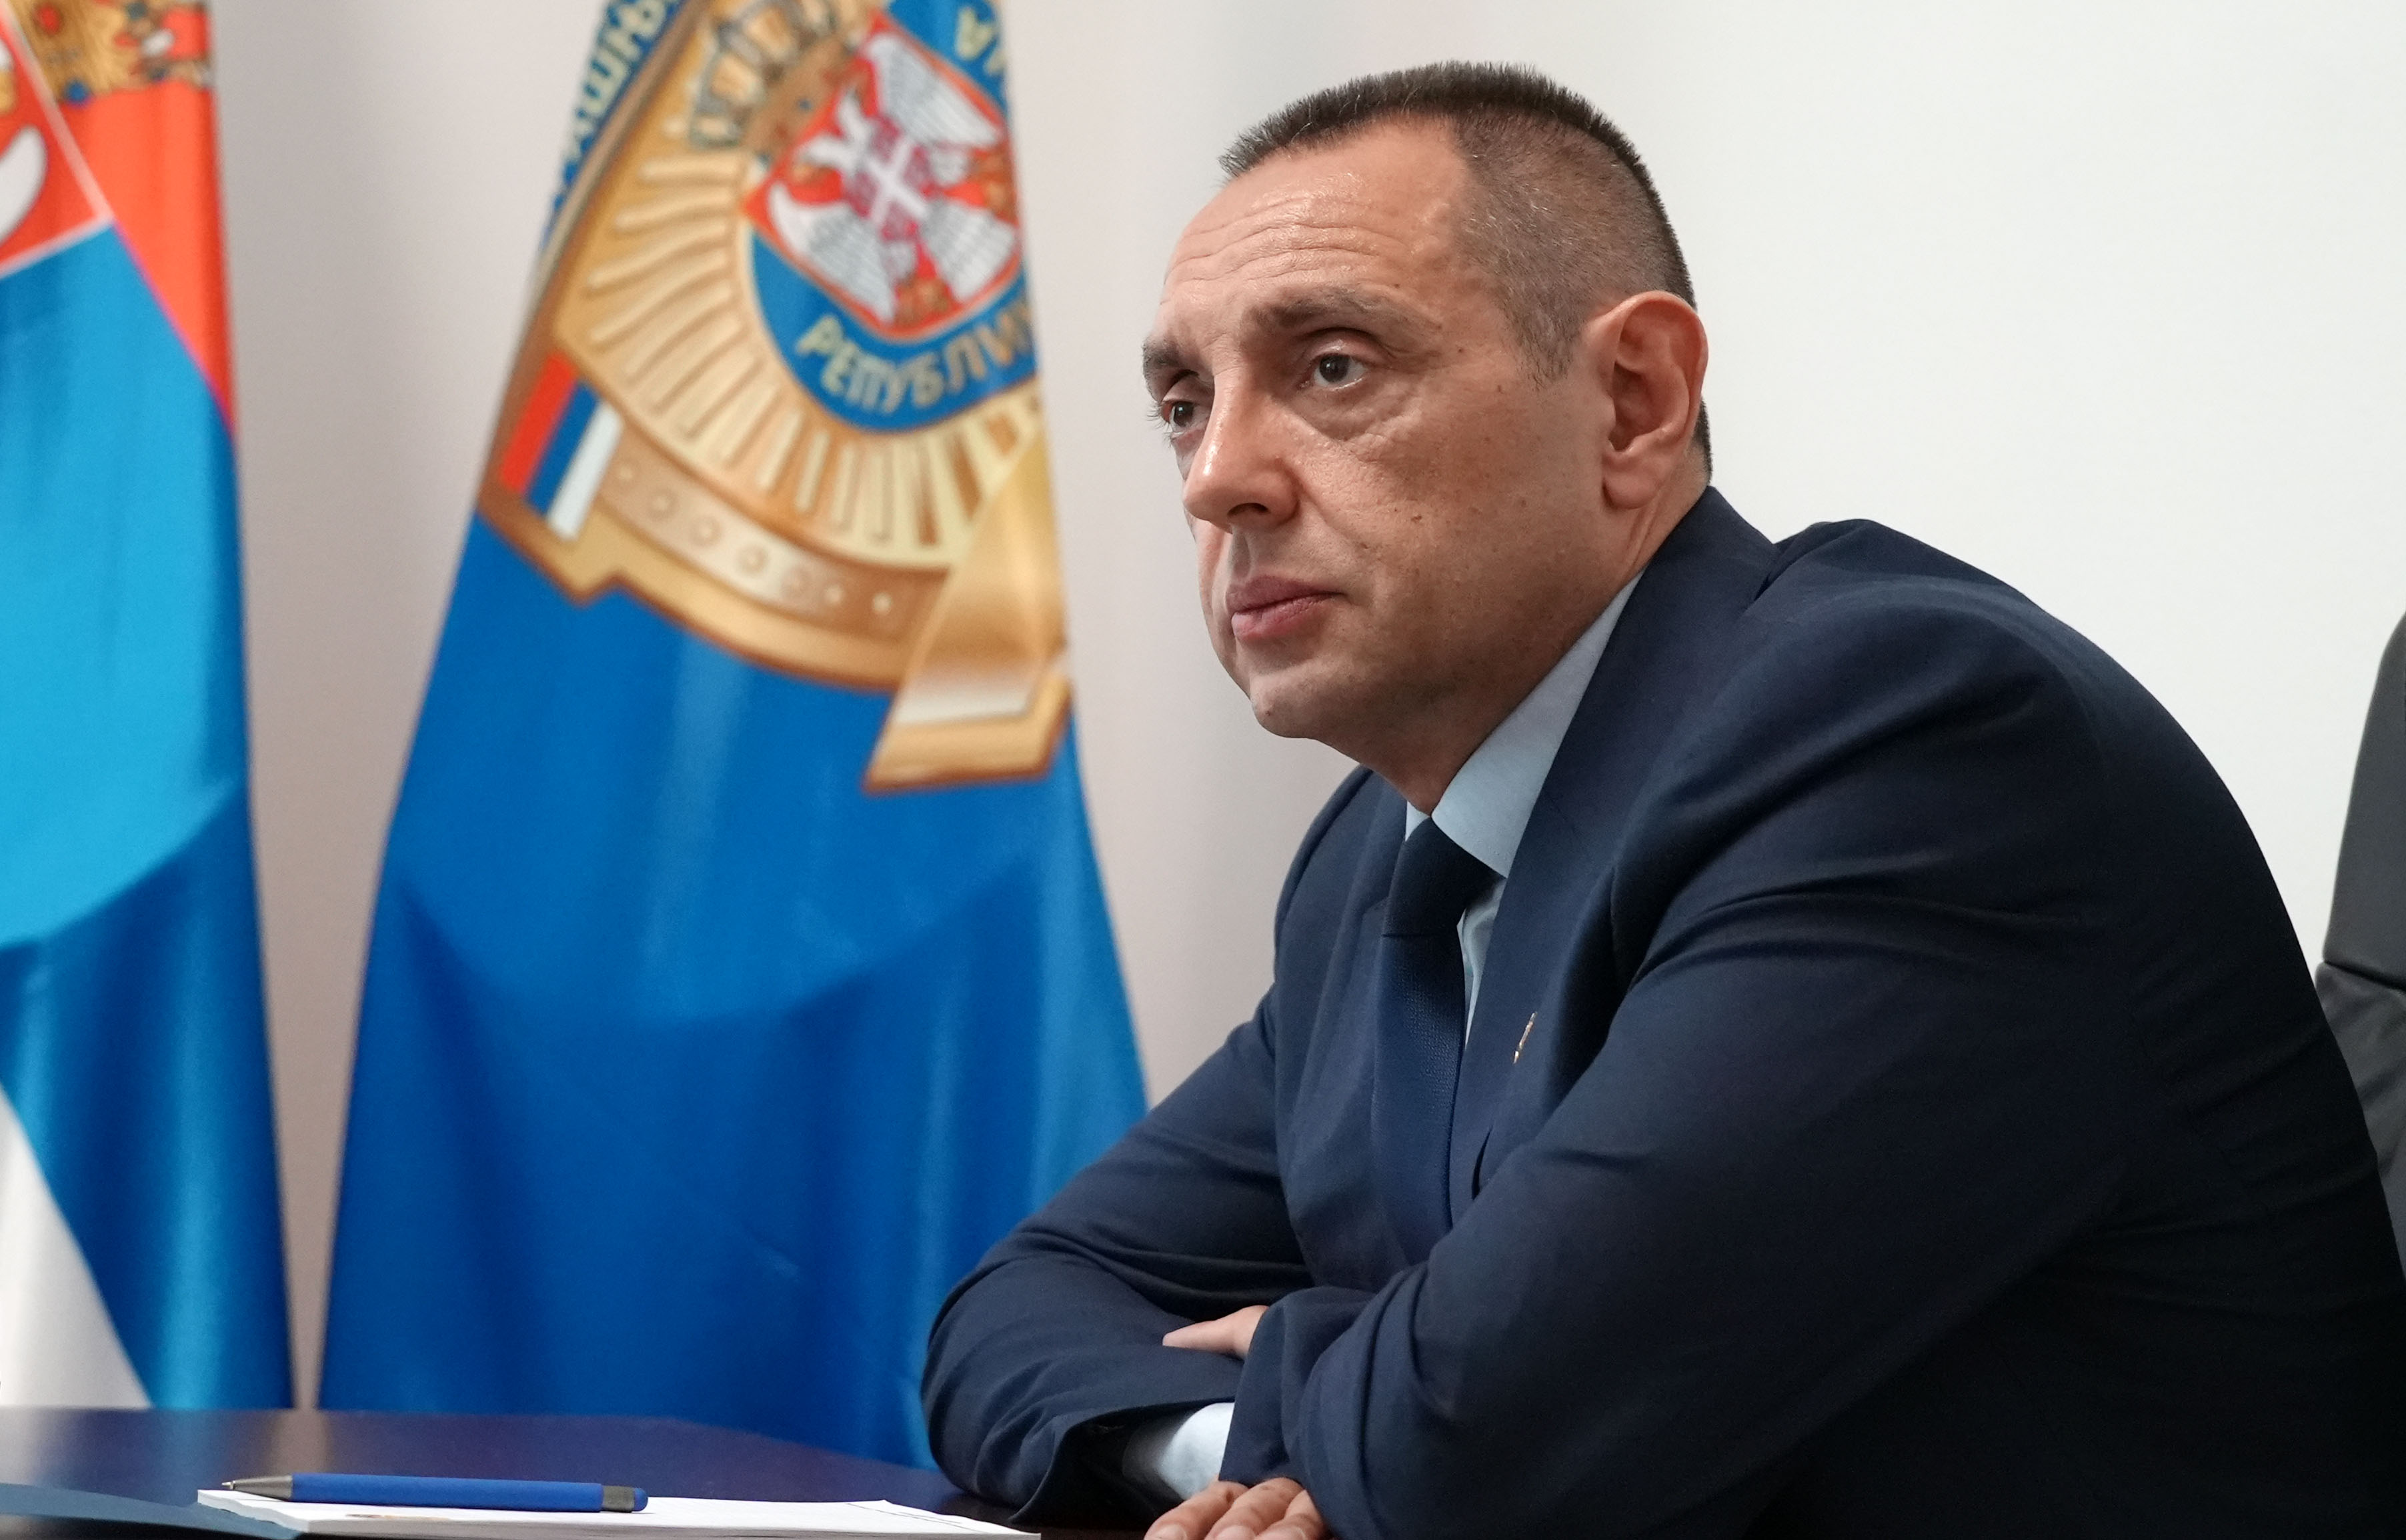 Ministar unutrašnjih poslova Aleksandar Vulin odgovorio ministru rudarstva i energetike Zorani Mihajlović